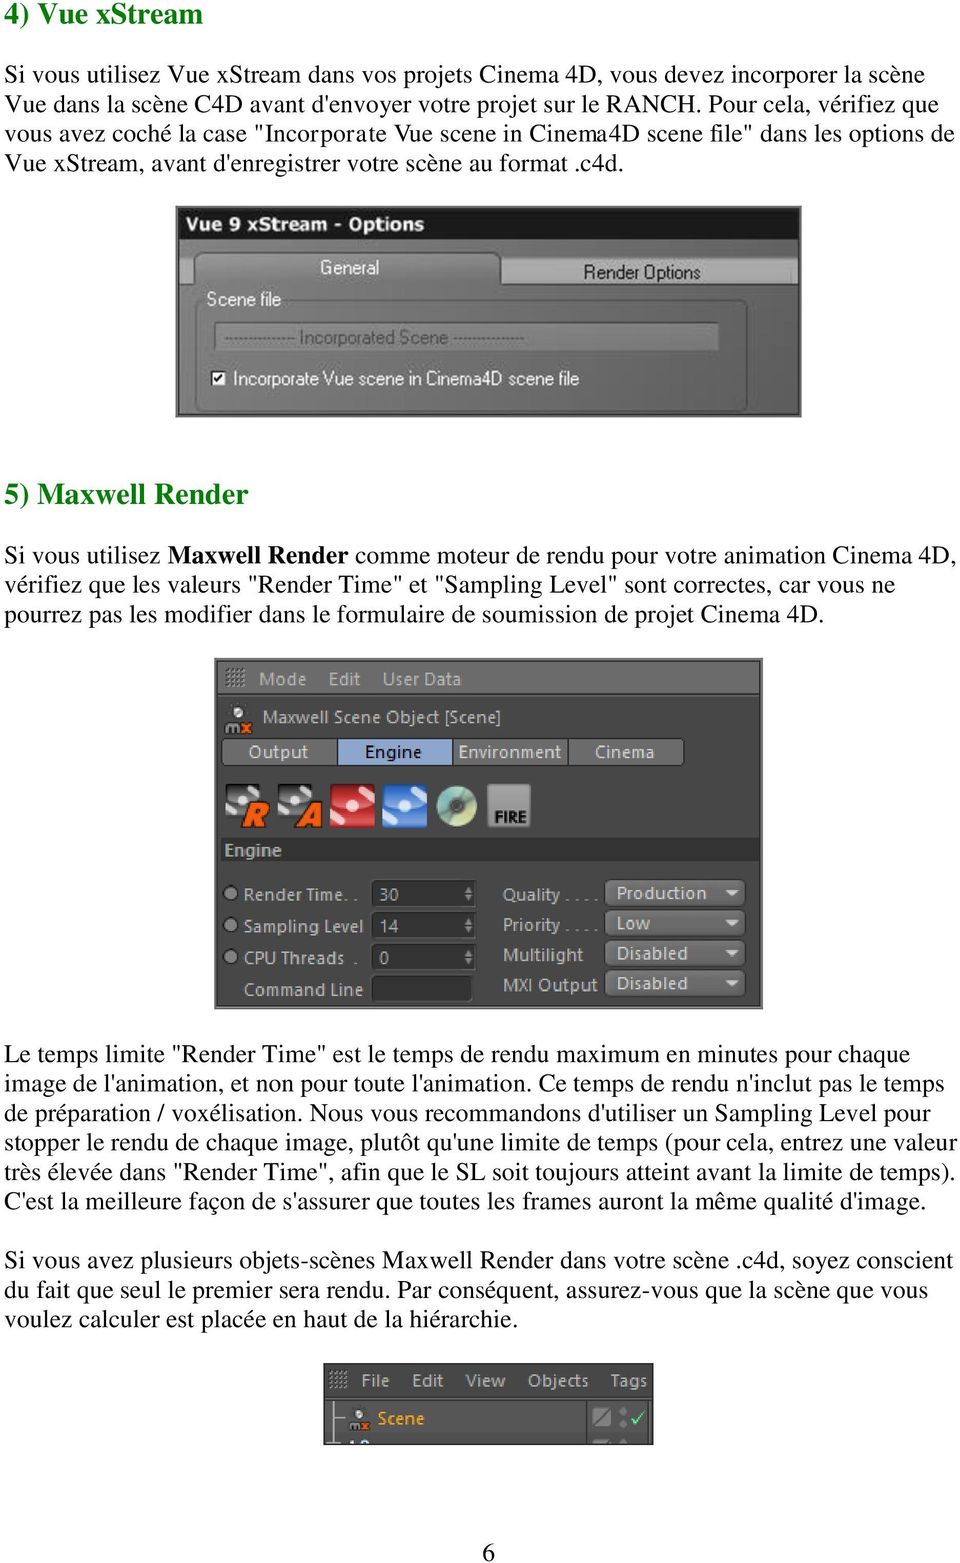 5) Maxwell Render Si vous utilisez Maxwell Render comme moteur de rendu pour votre animation Cinema 4D, vérifiez que les valeurs "Render Time" et "Sampling Level" sont correctes, car vous ne pourrez